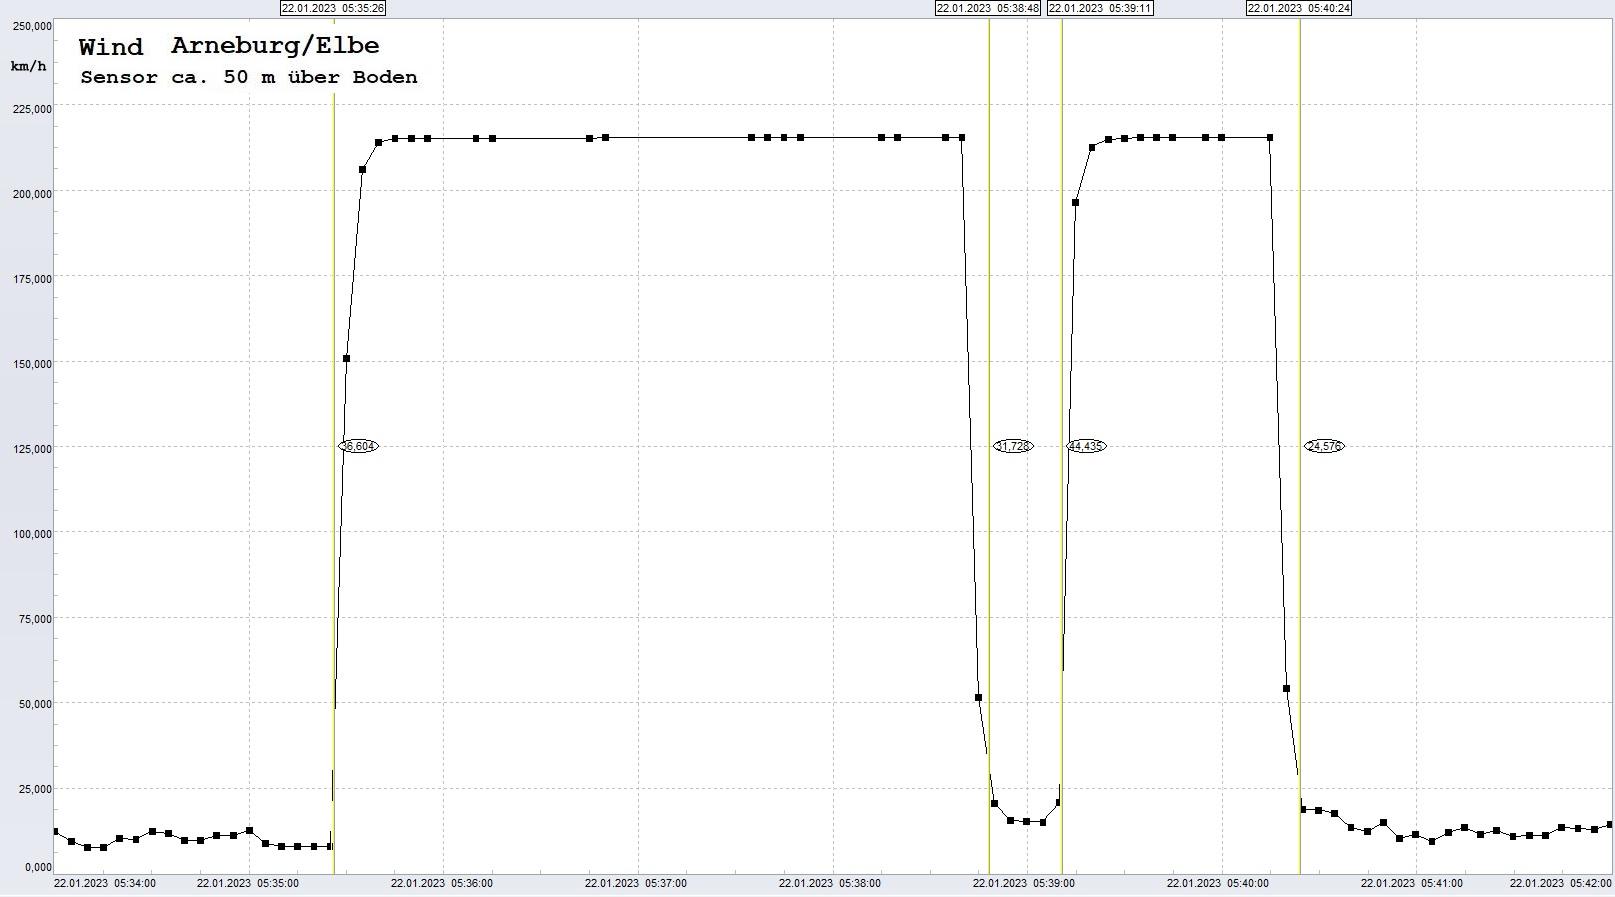 Arneburg: Signalstrung, 22.01.2023, ab ca. 05:35 Uhr
  Sensor setzt immer wieder mit MAX-Wert aus